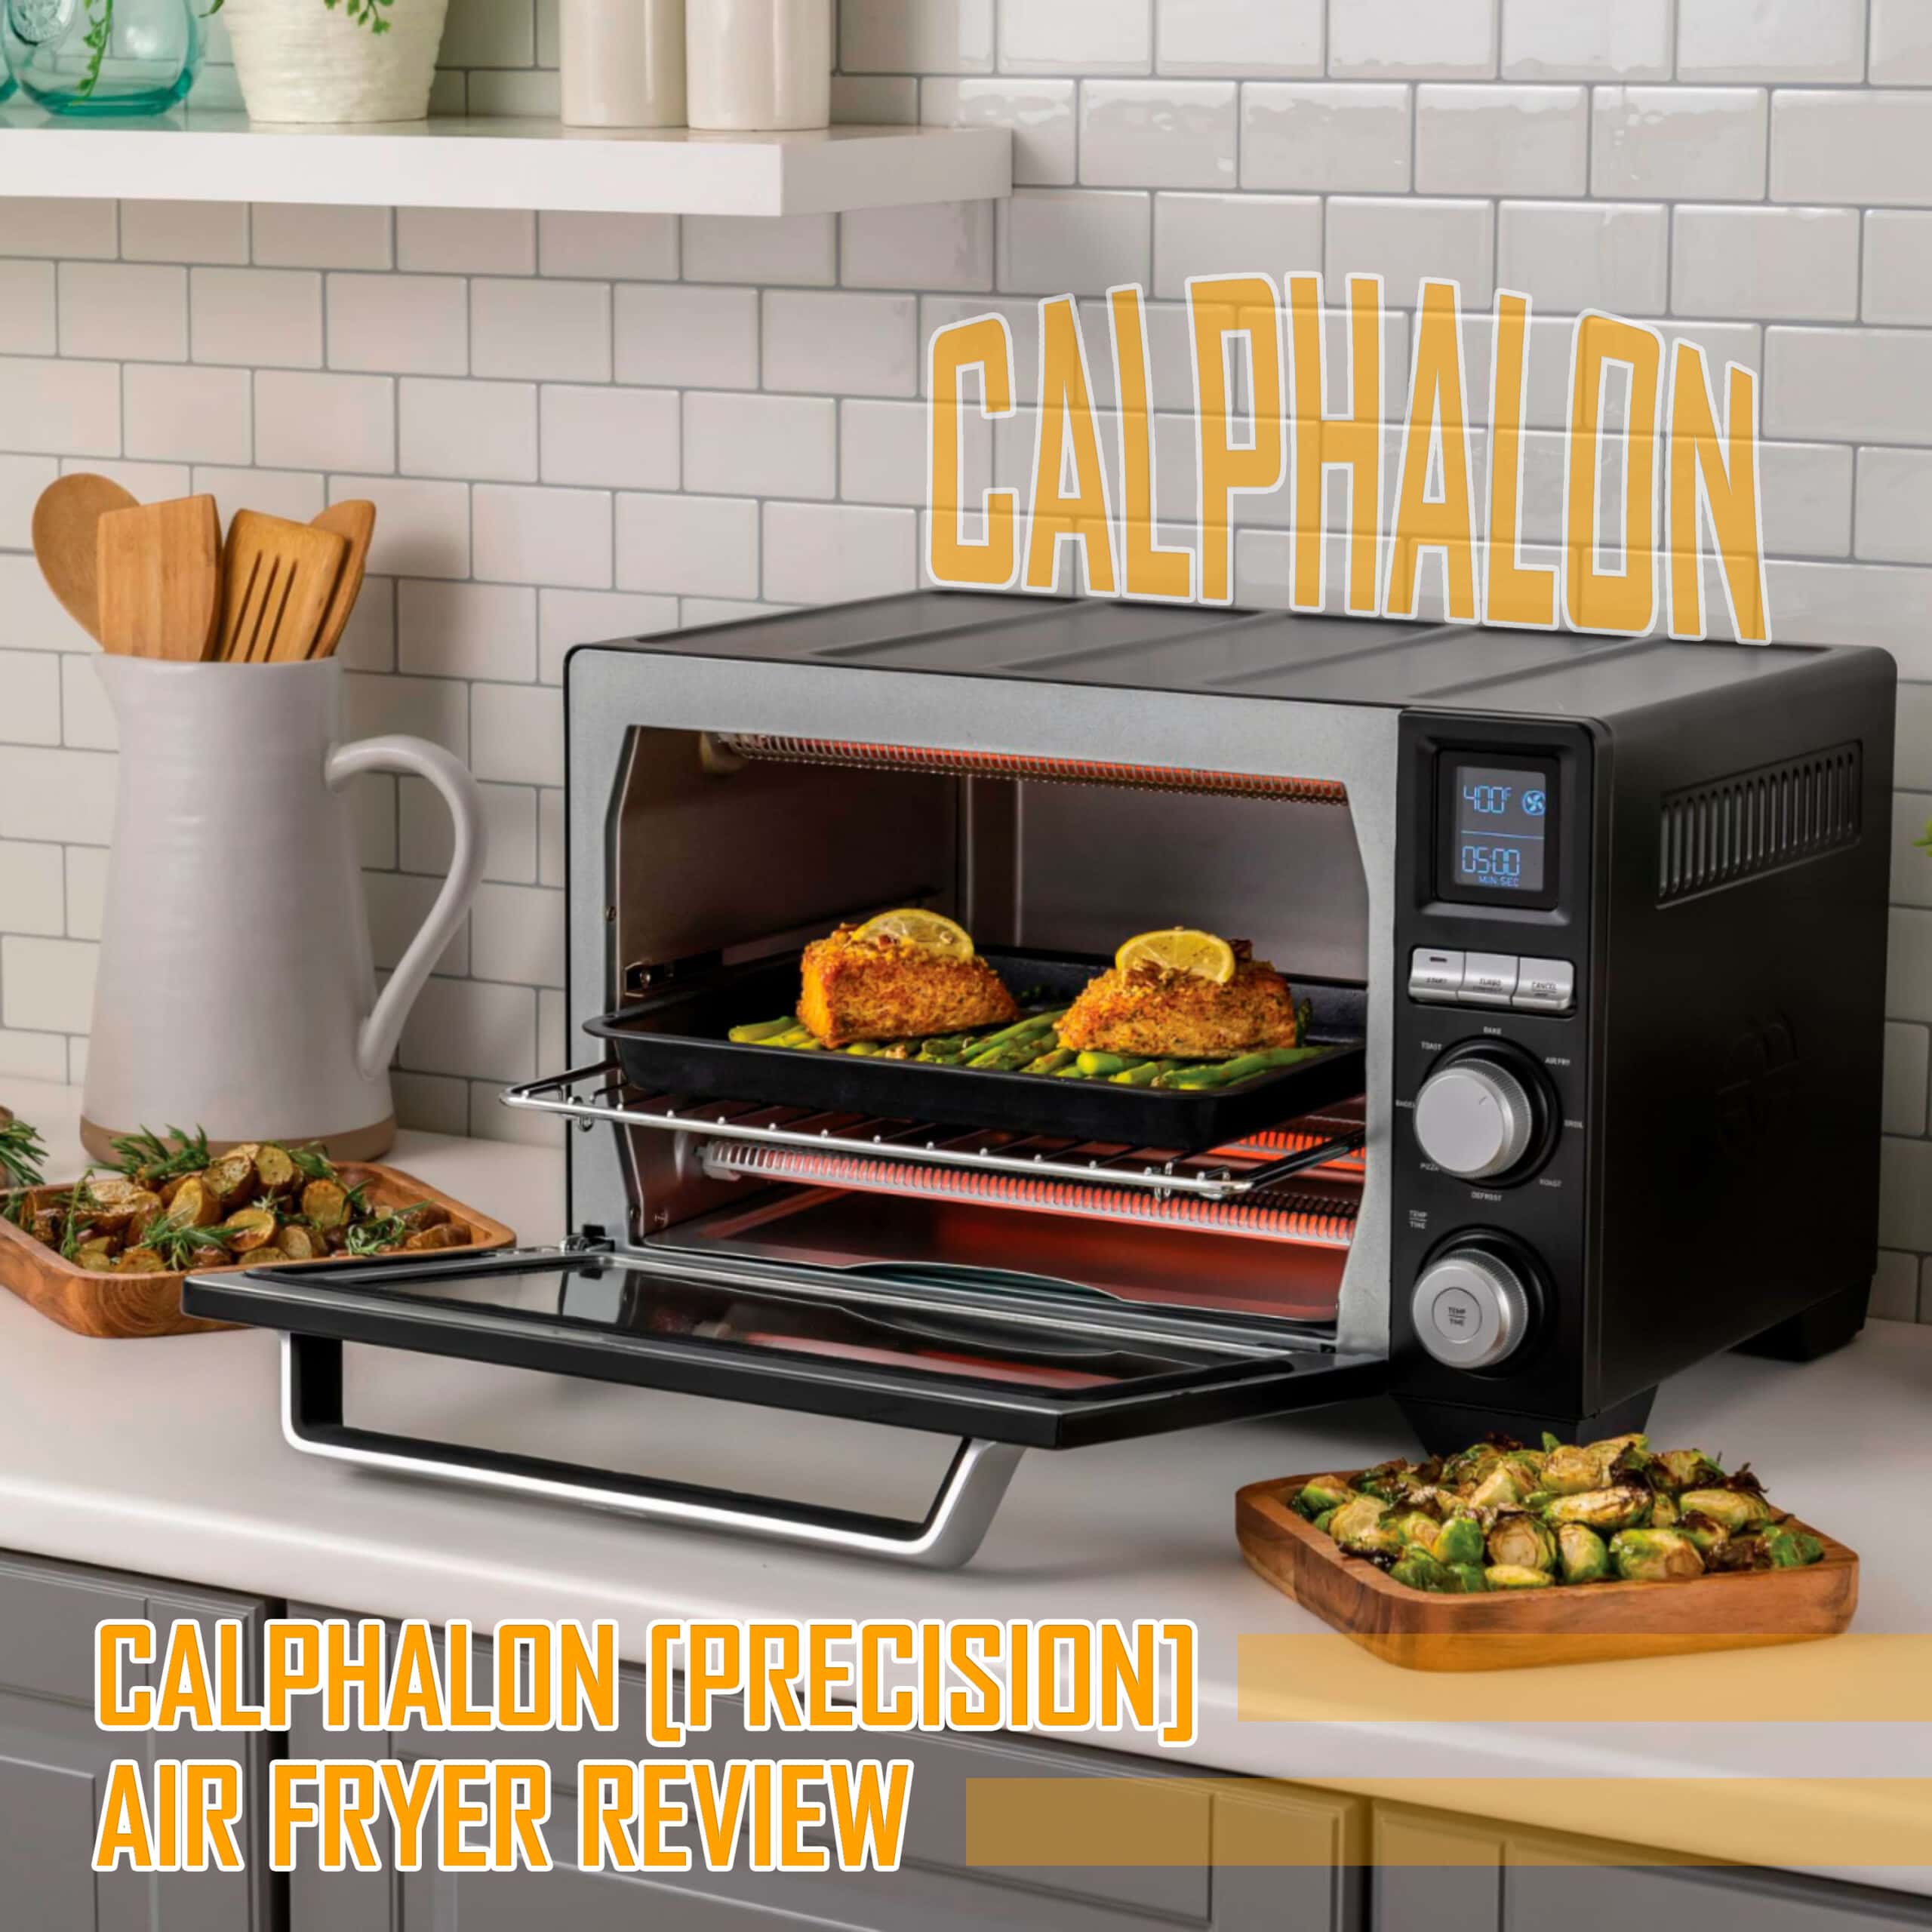 Calphalon air fryer review